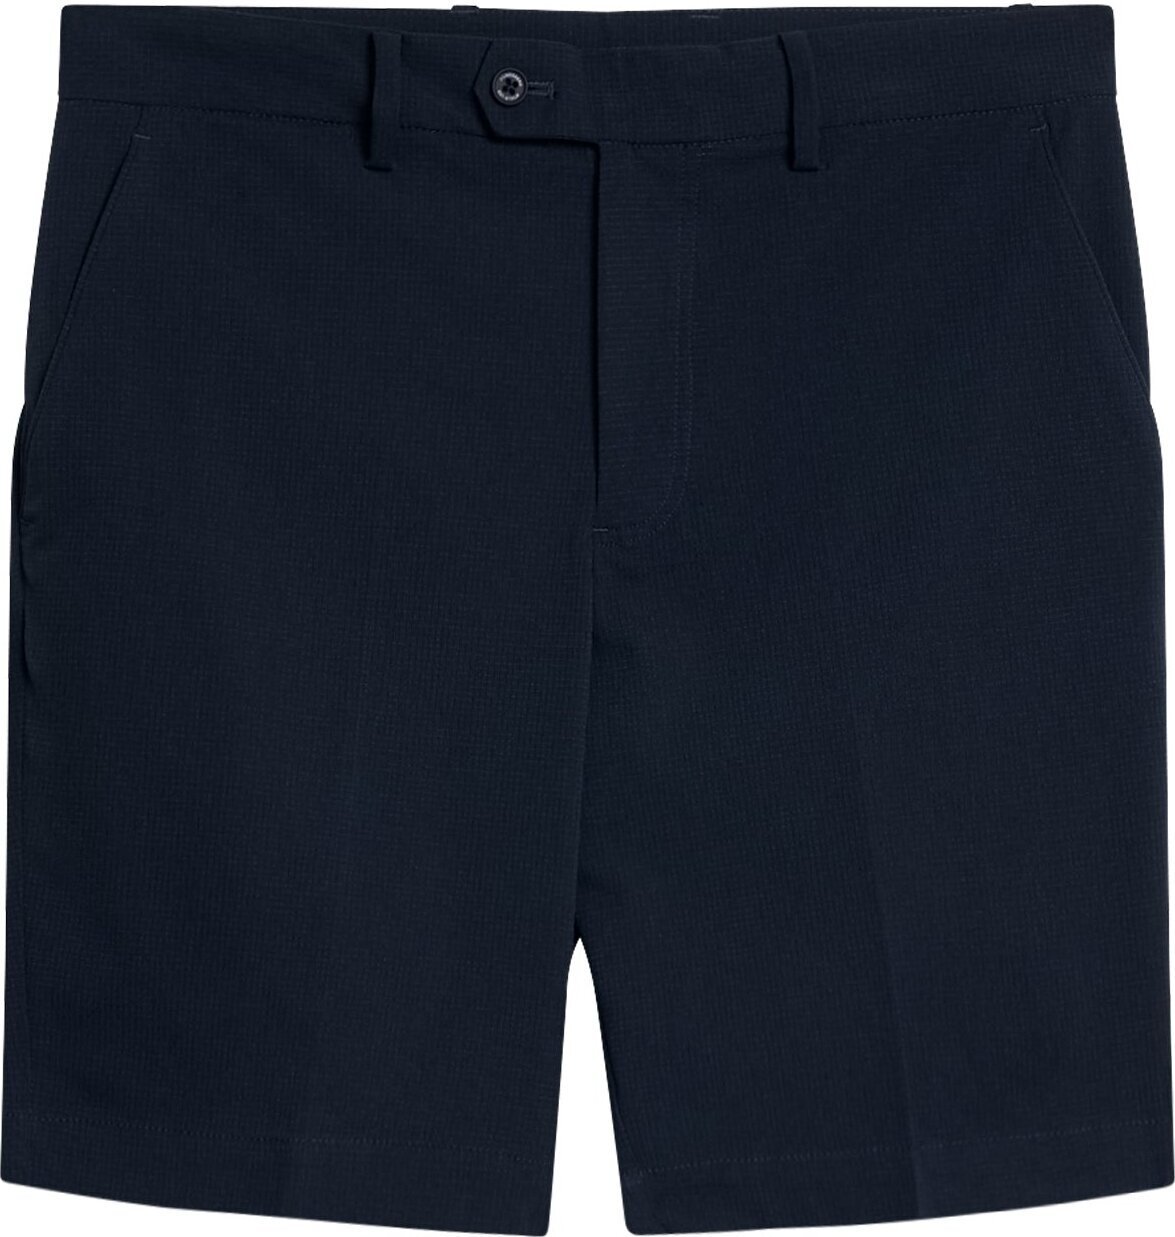 Σορτς J.Lindeberg Vent Tight Golf Shorts Black 31T